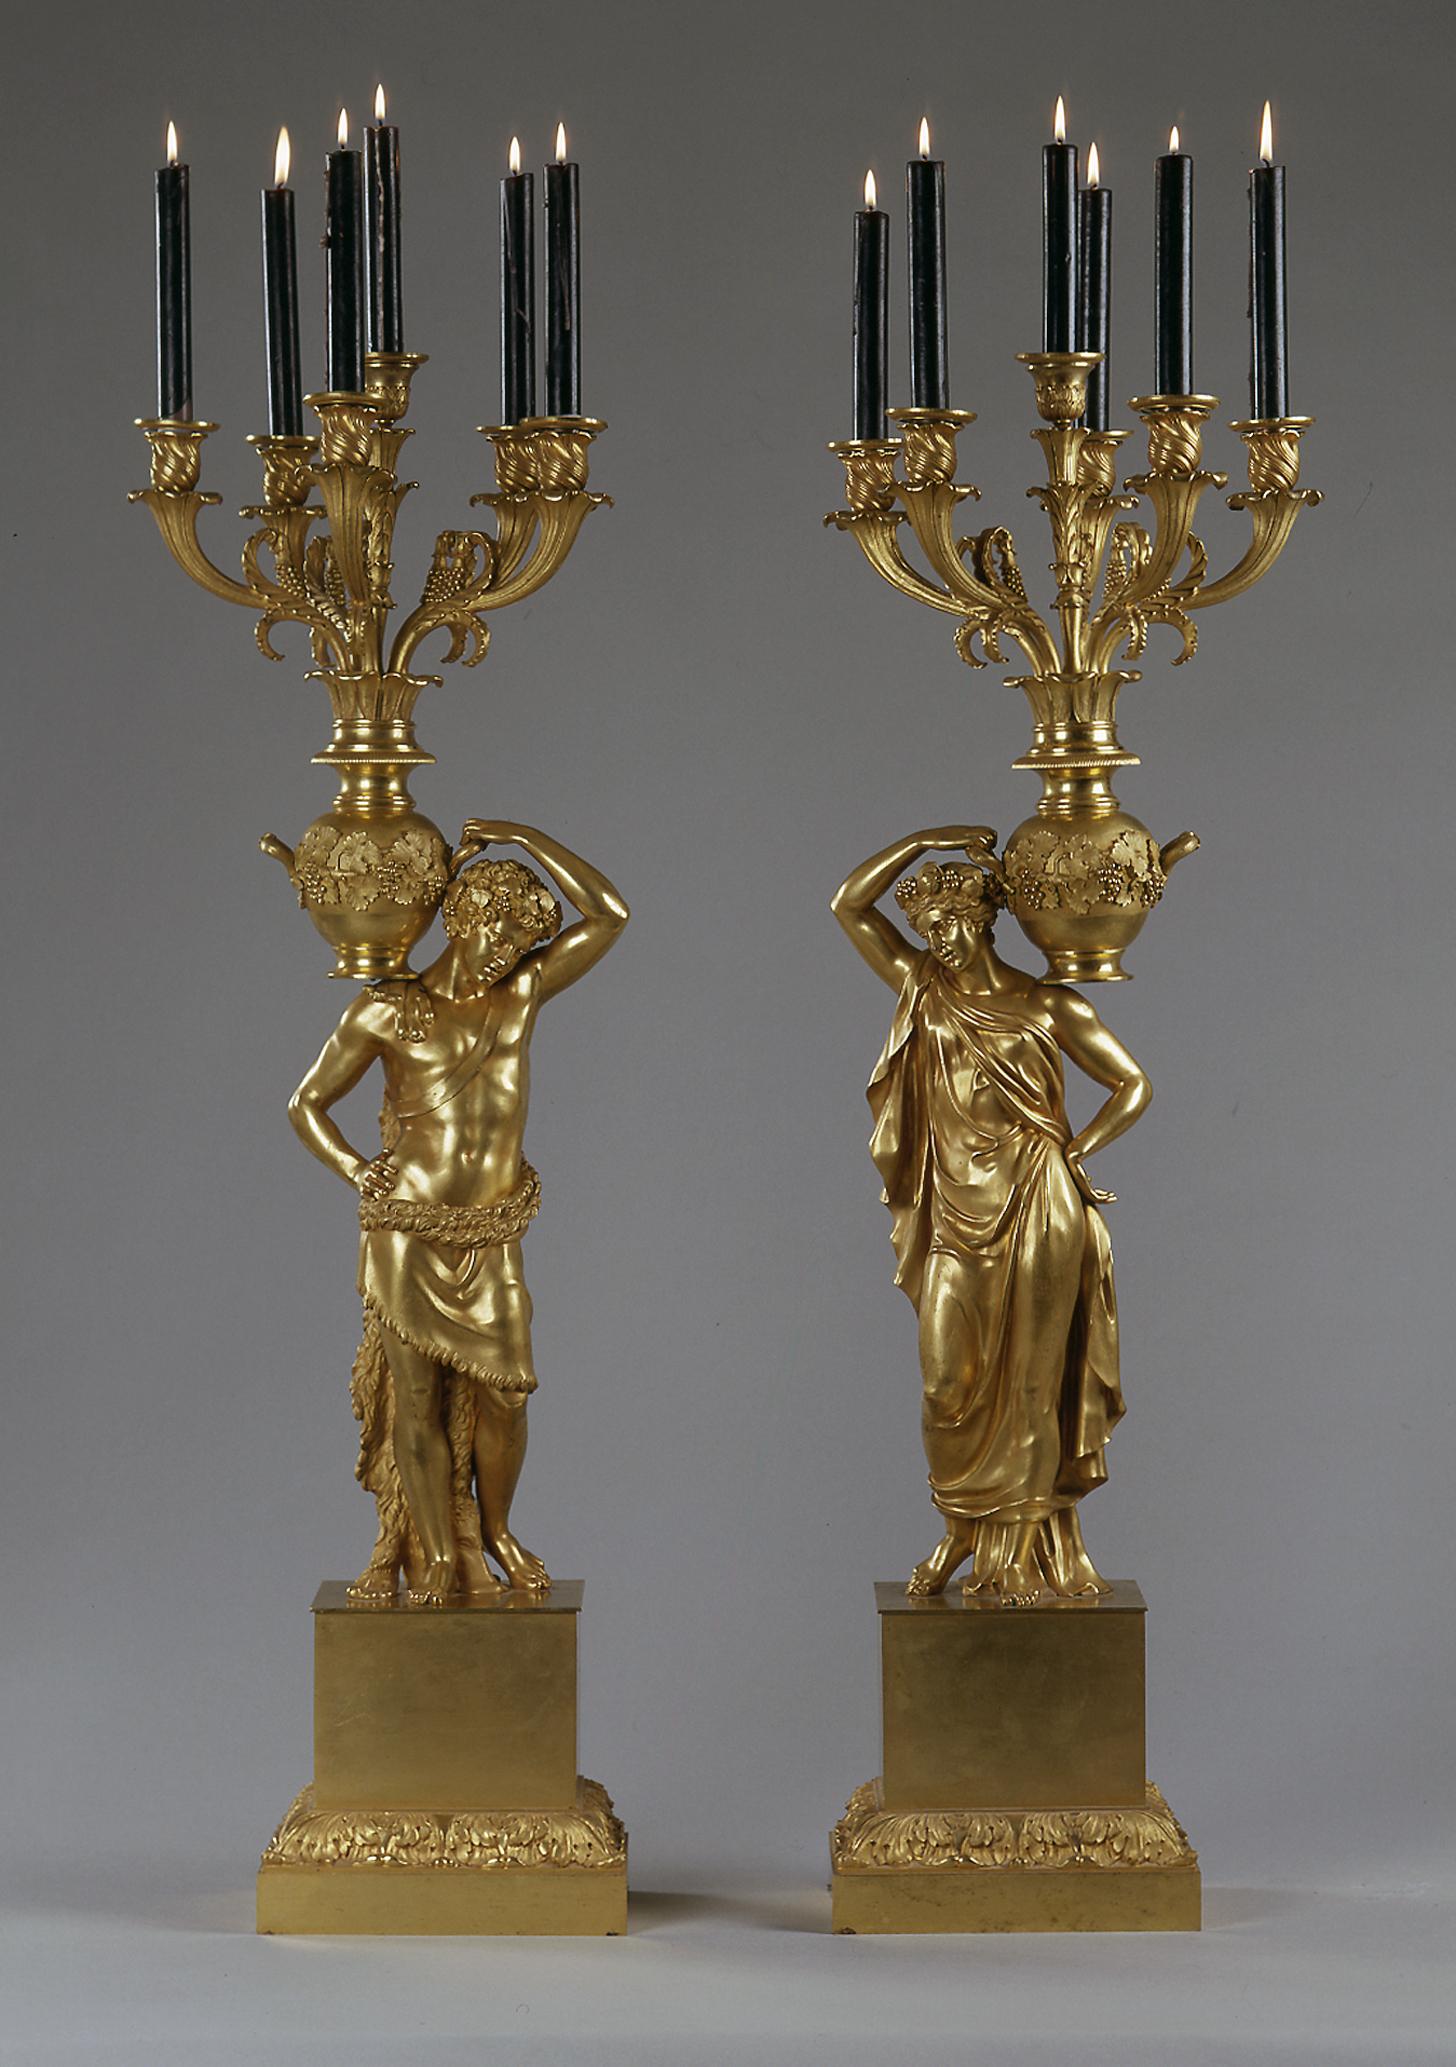 Une magnifique et très importante paire de candélabres figuratifs en bronze doré de la période Empire.

Français, vers 1815.

Magnifique et très importante paire de candélabres figuratifs en bronze doré de la période de l'Empire. Les candélabres